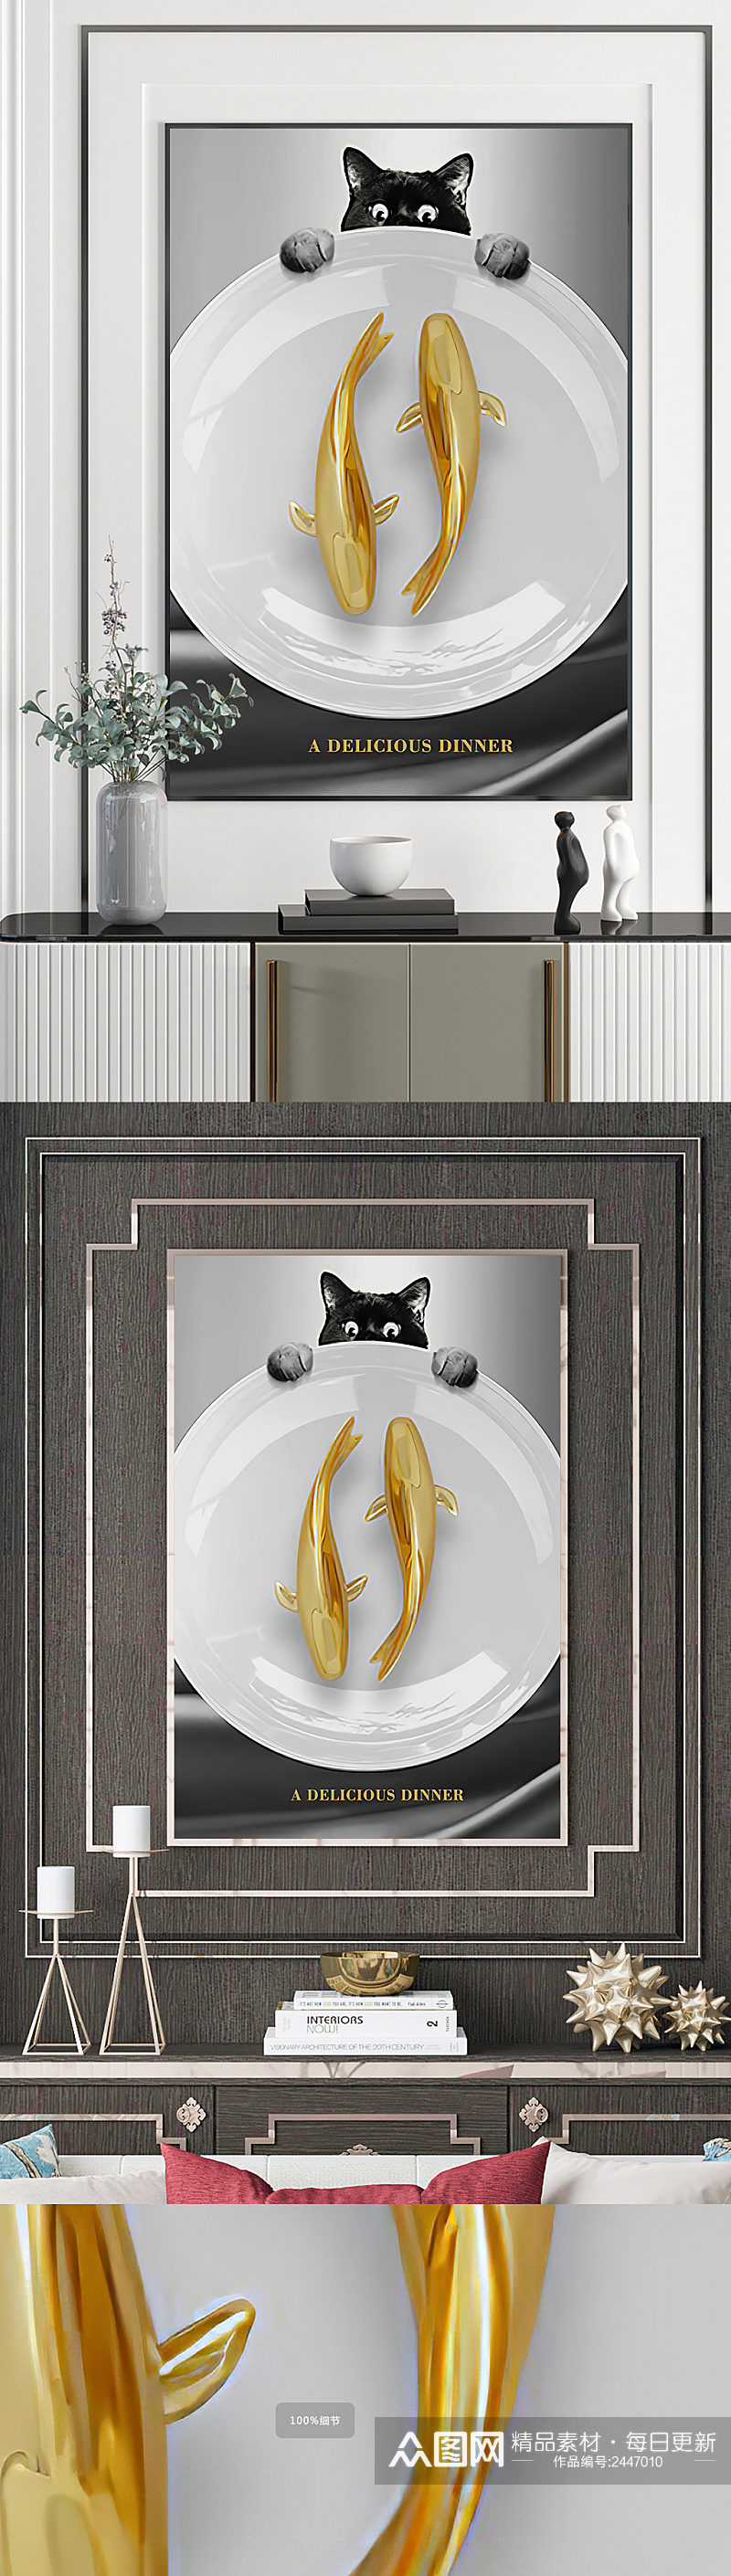 猫咪金鱼餐具装饰画素材